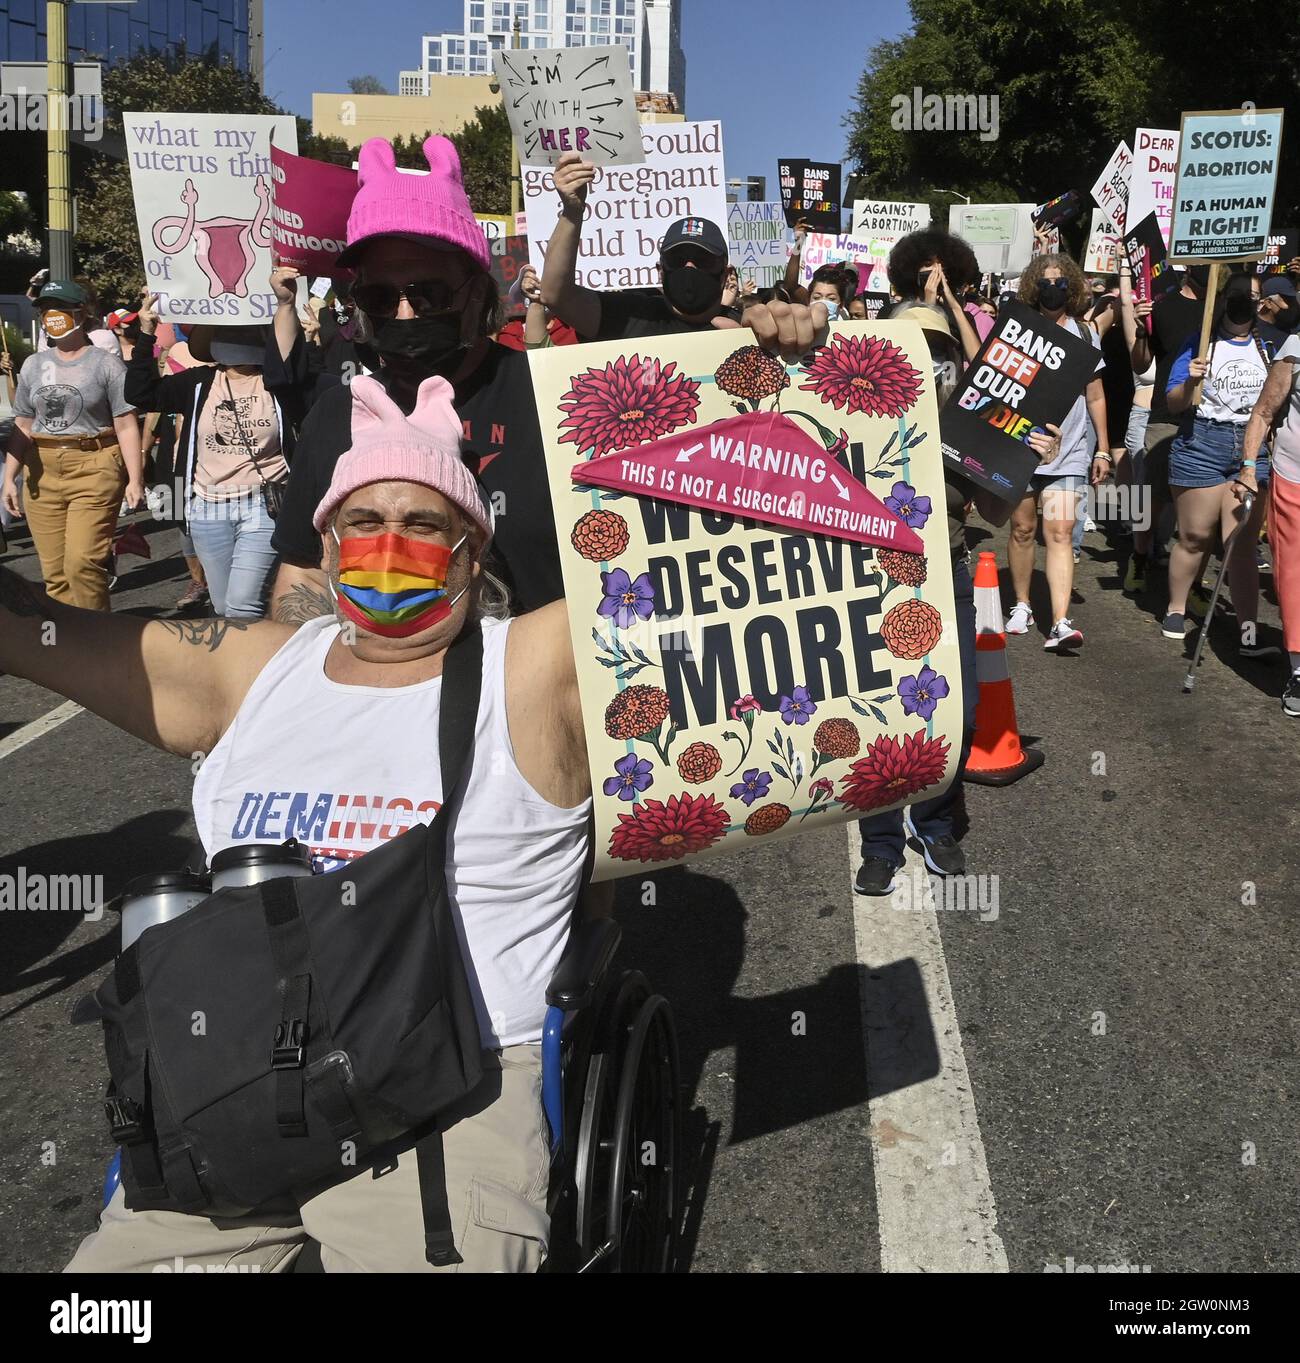 Los Ángeles, Estados Unidos. 02nd Oct, 2021. Miles de personas toman las calles en el centro de Los Ángeles y otros lugares alrededor de Southland hoy para apoyar los derechos reproductivos, parte de una serie nacional de manifestaciones contra la prohibición casi total del aborto en Texas el sábado, 1 de octubre de 2021. La Fundación Marcha de las Mujeres celebró su marcha oficial en Washington, DC, con más de 600 'marchas más” planeadas a nivel nacional. Foto de Jim Ruymen/UPI Crédito: UPI/Alamy Live News Foto de stock